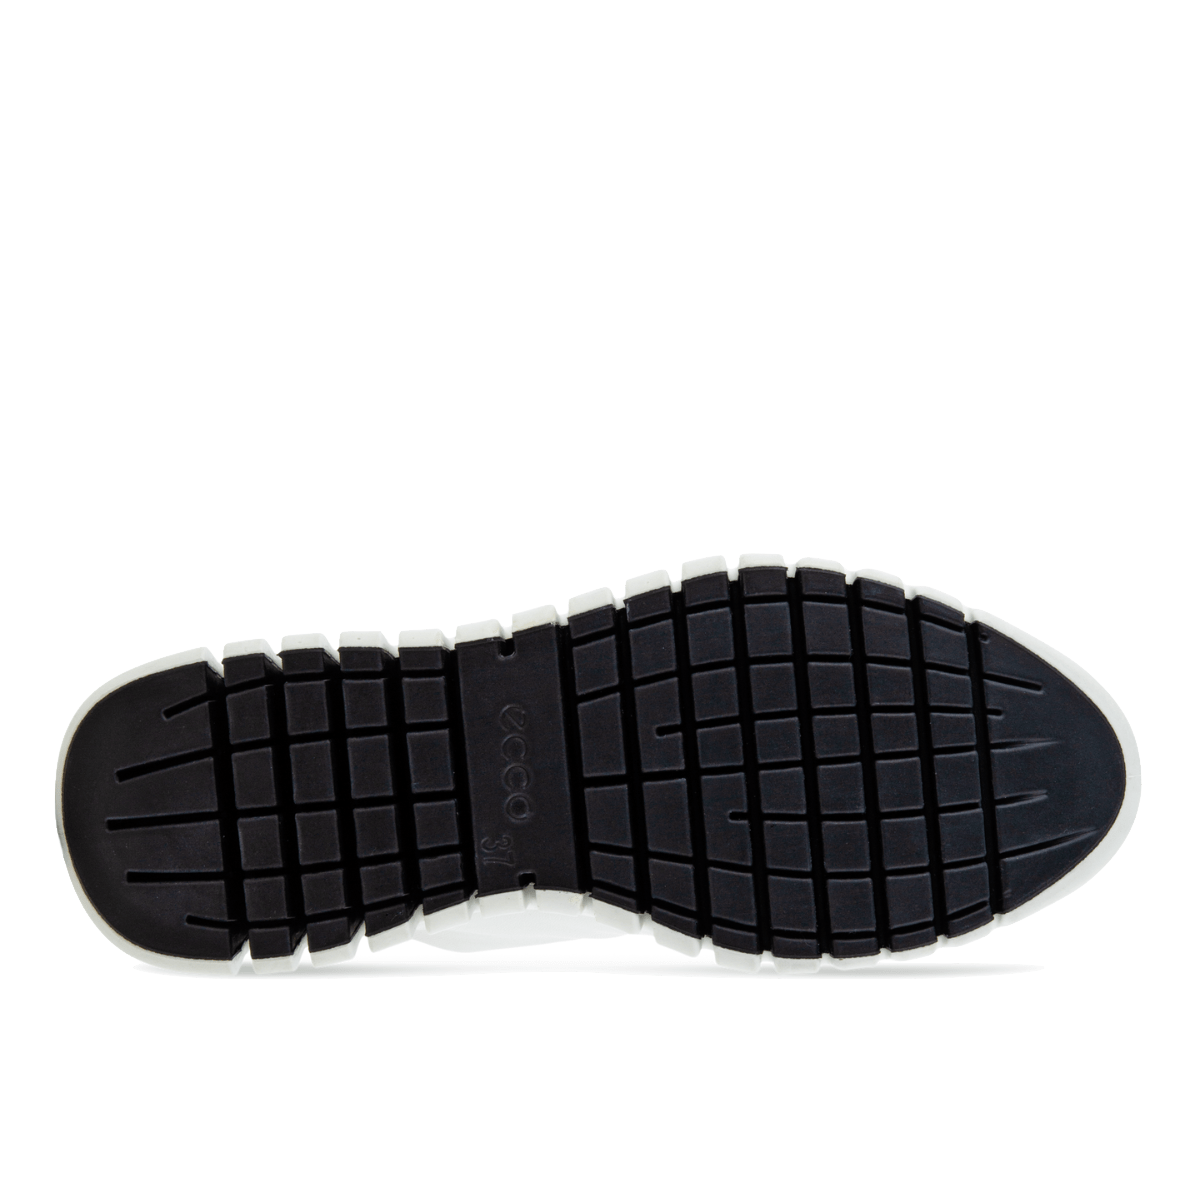 Sneaker Ecco Gruuv Suola Flessibile Pelle White/Light Grey - Ecco - Calzature Savorè